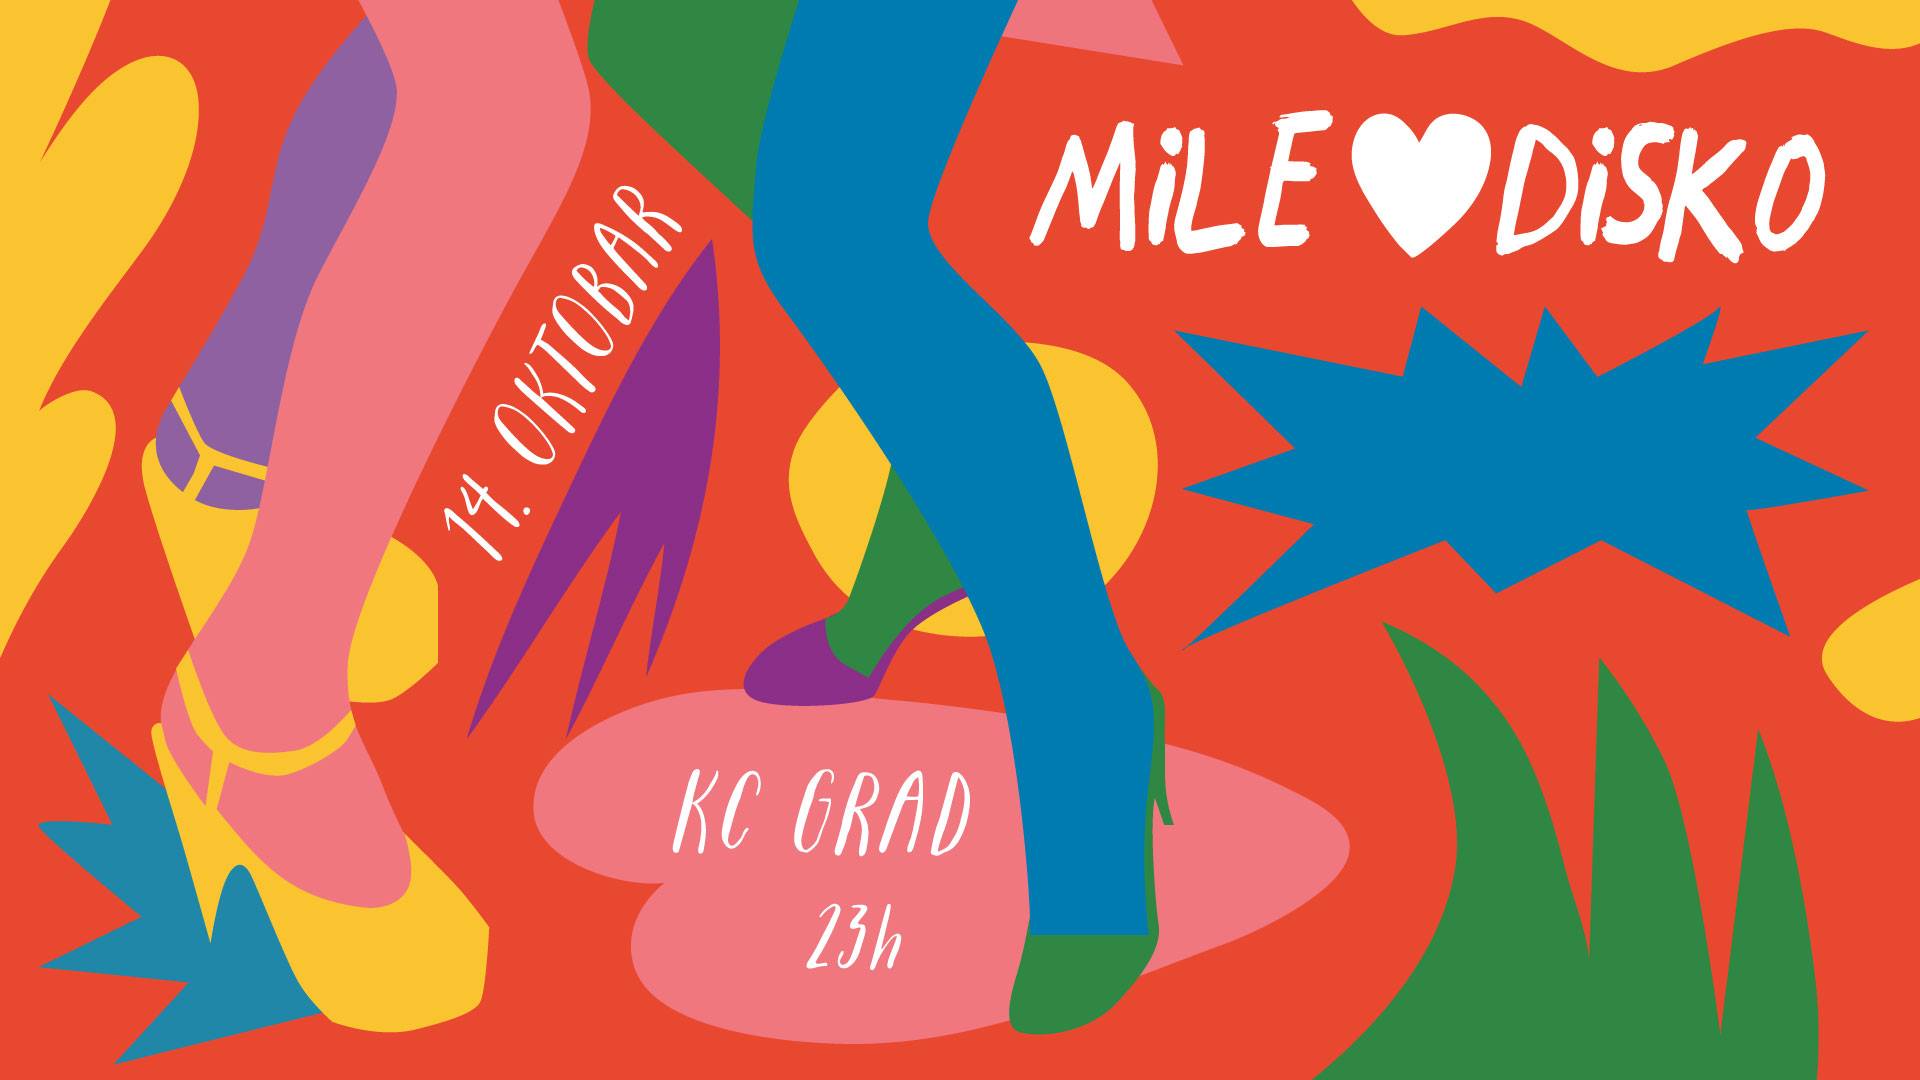 Mile Voli Disko 14.10.2017. Kc GRAD, Beograd